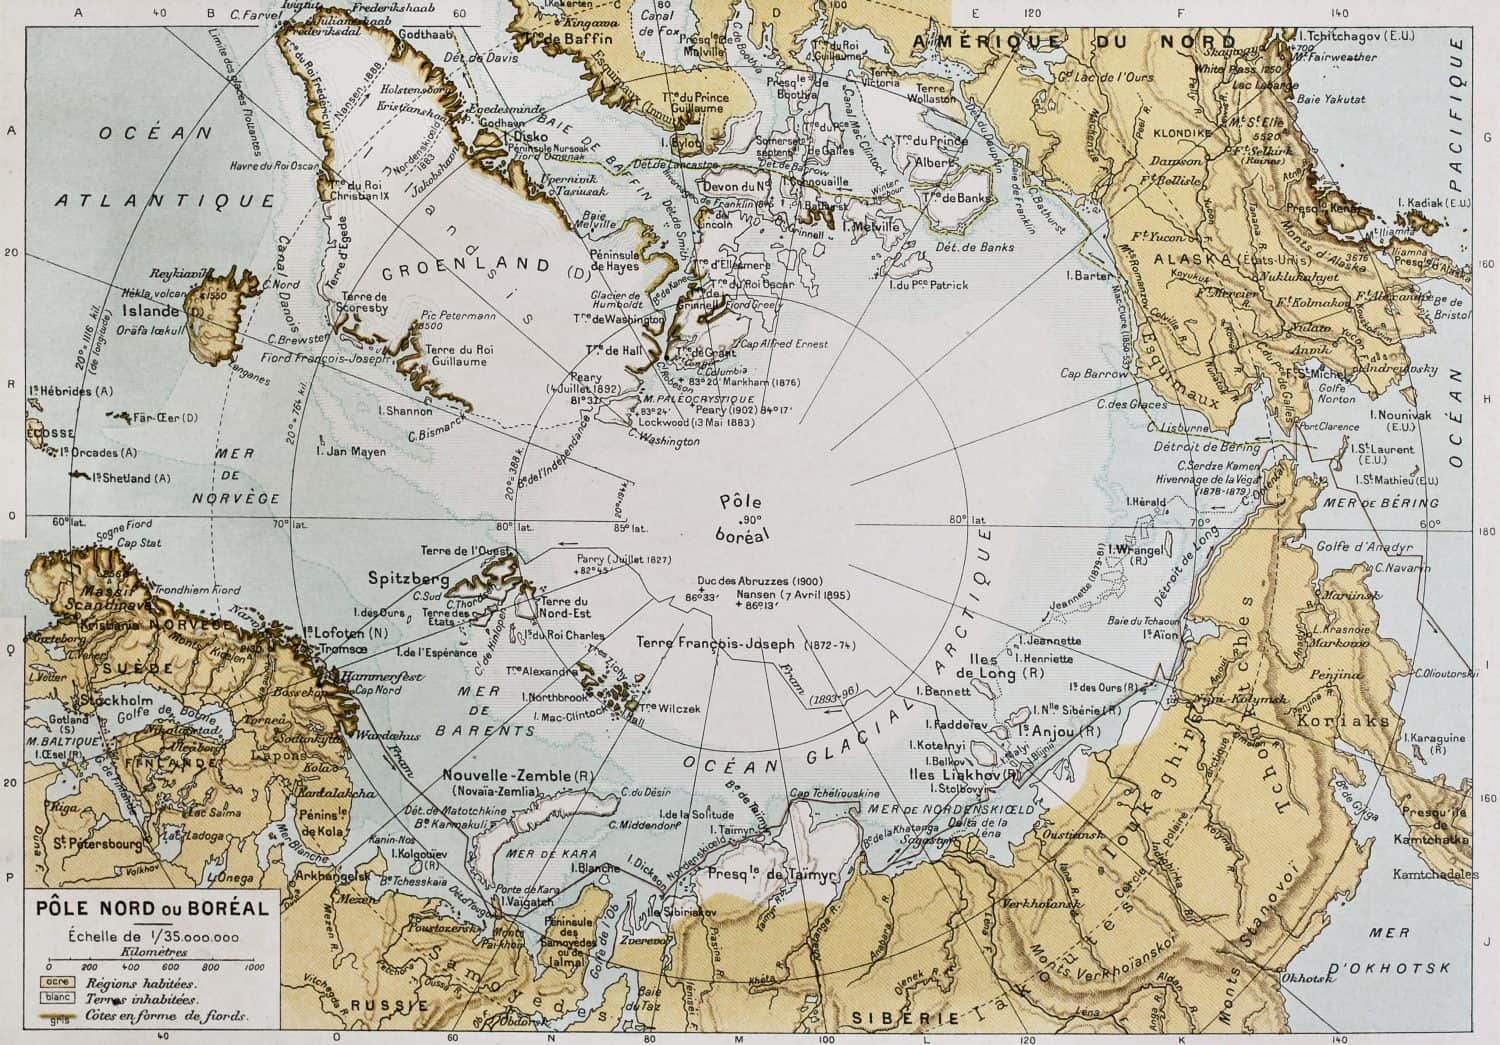 Arctic old map. By Paul Vidal de Lablache, Atlas Classique, Librerie Colin, Paris, 1894